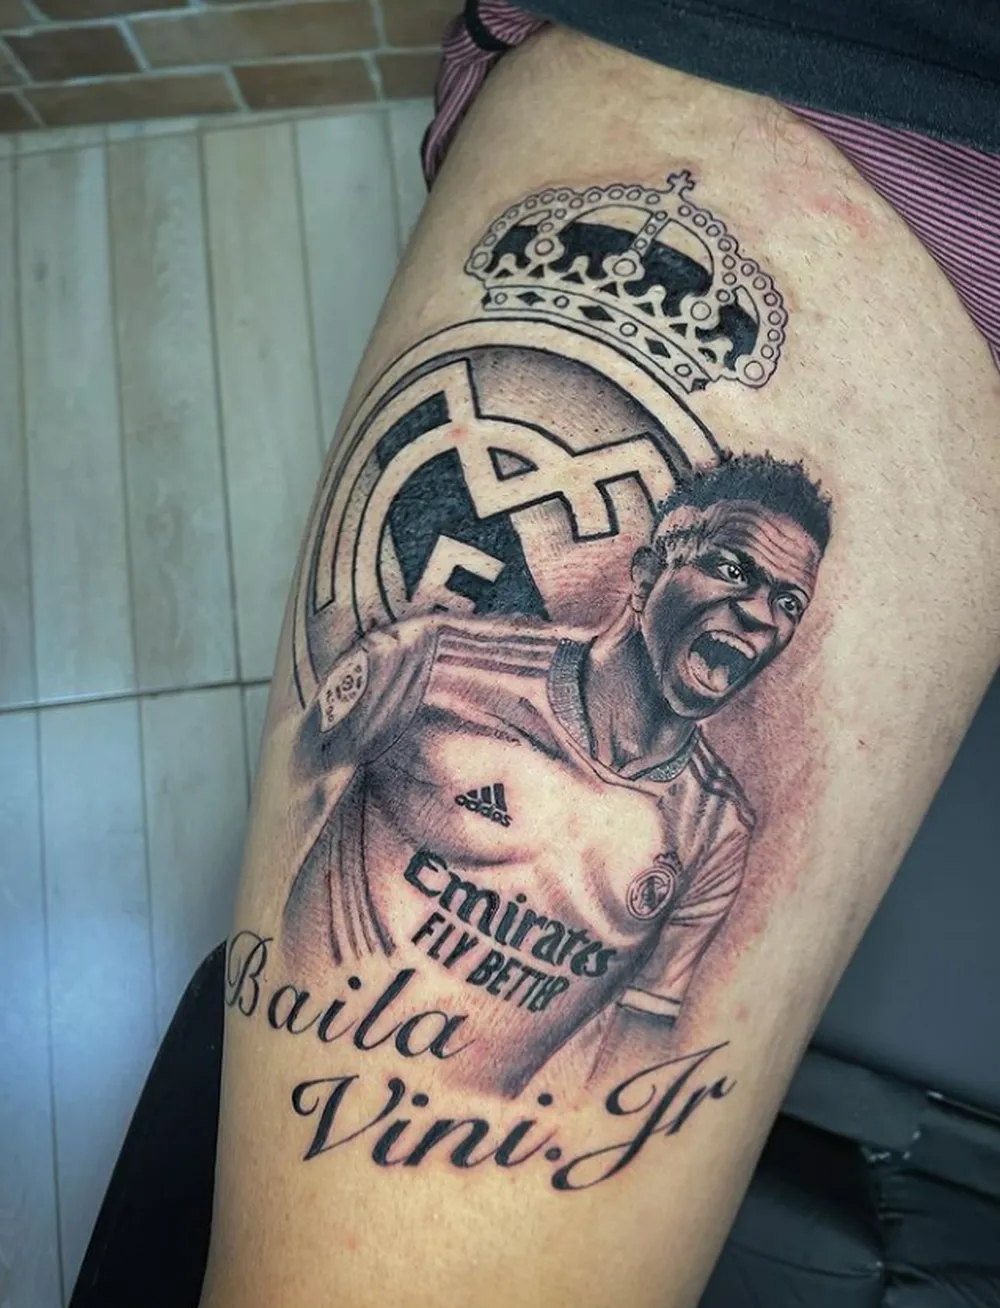 巴西纹身艺术家免费为球迷文维尼修斯头像，以示对球员的支持